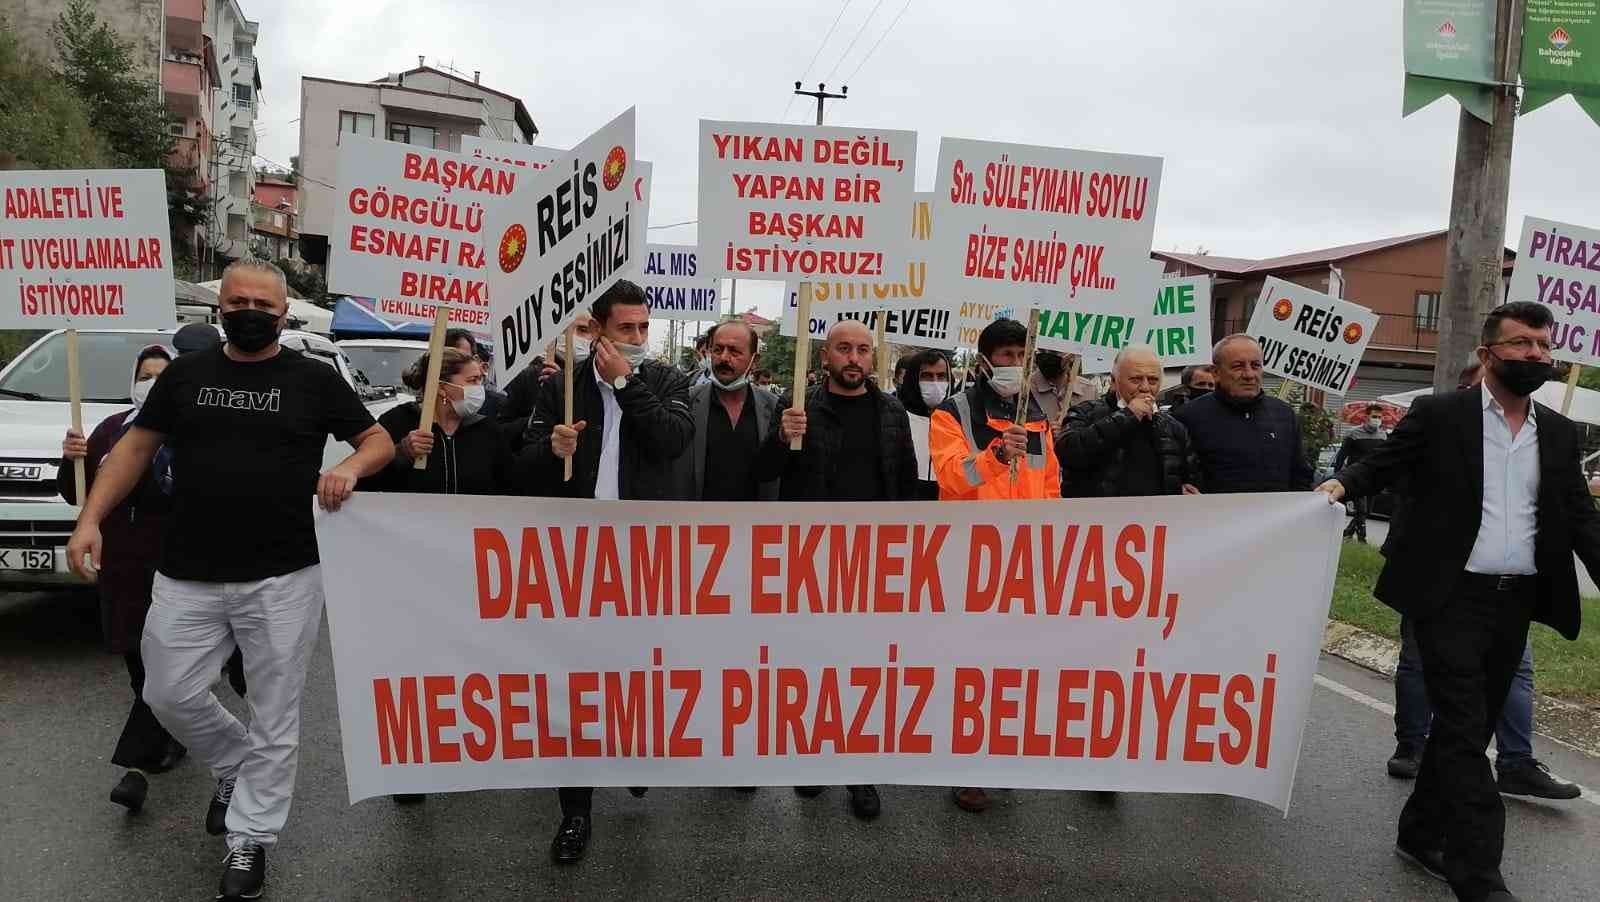 İşyerleri belediye tarafından haksız yere mühürlendiğini iddia eden esnaf ilçede davullu zurnalı protesto yürüyüşü yaptı